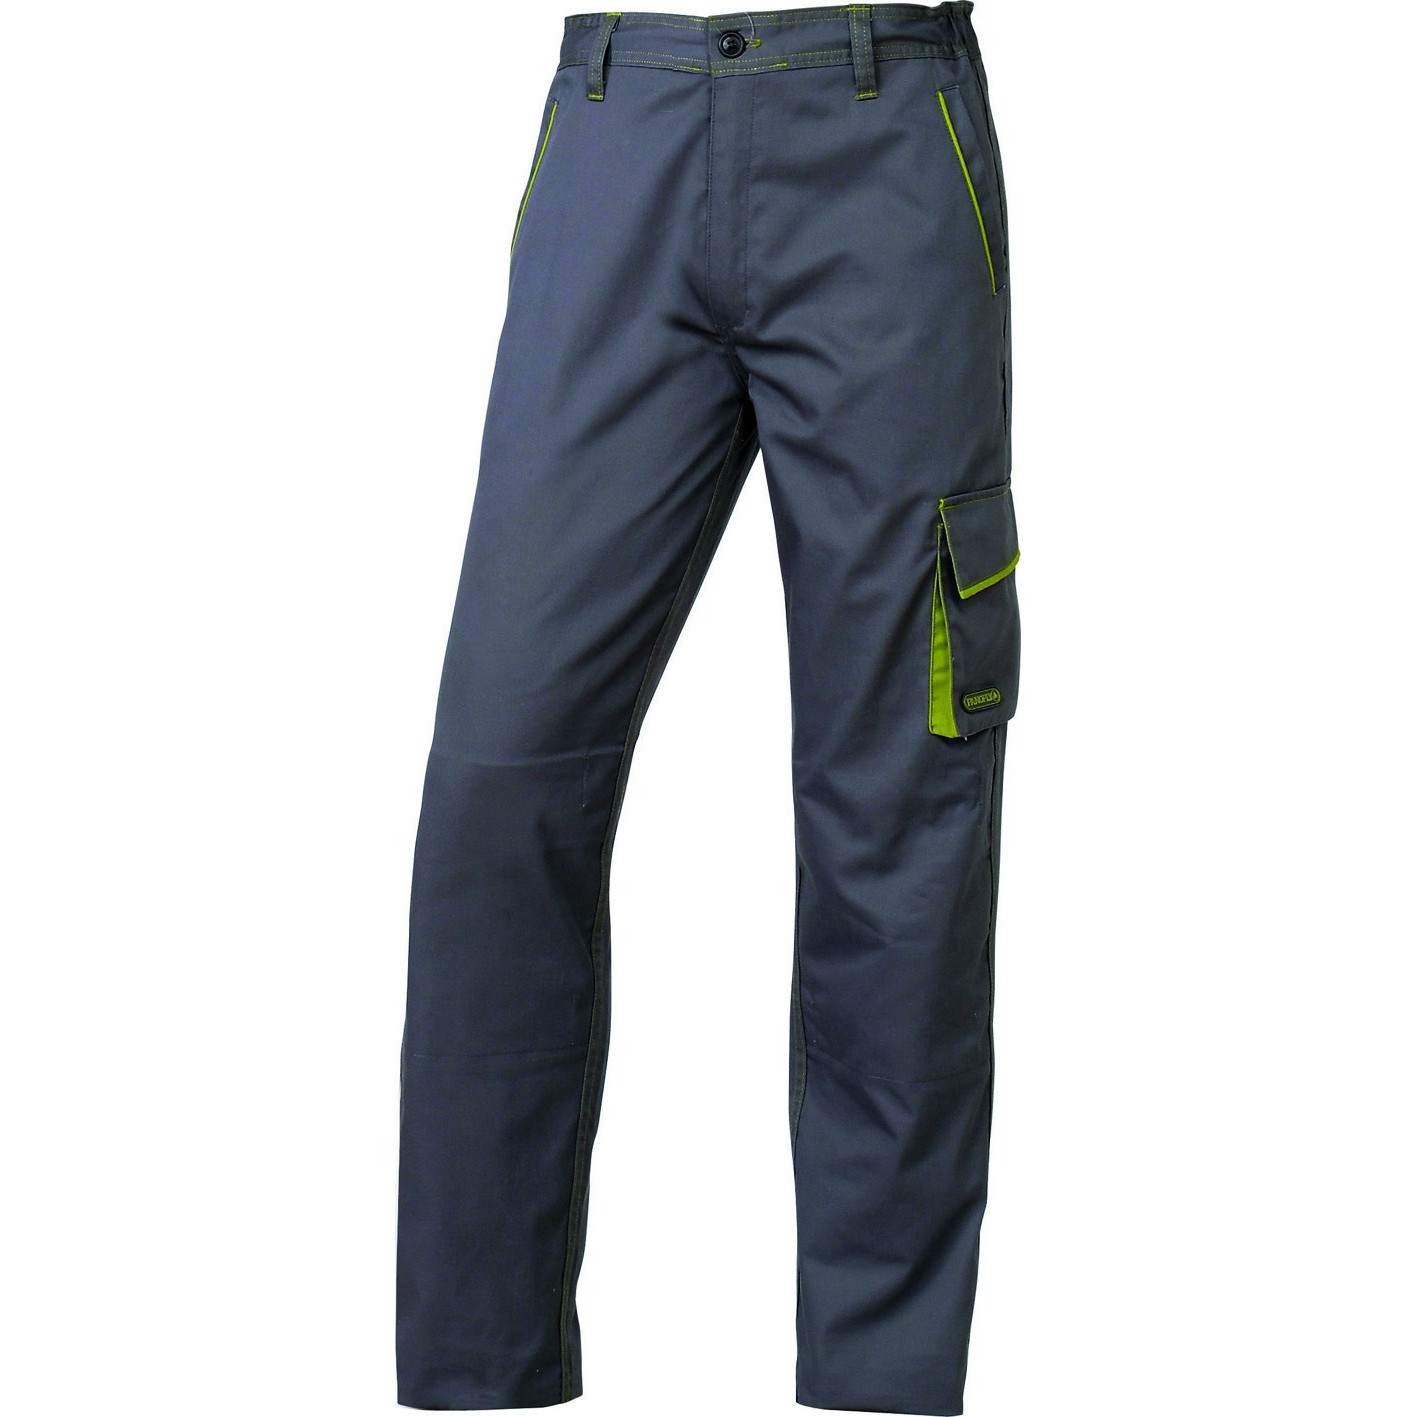 Panoply Mach 6 Groupe Delta Plus - Pantalon de travail 5 poches -  Homme Taille M - L - XL